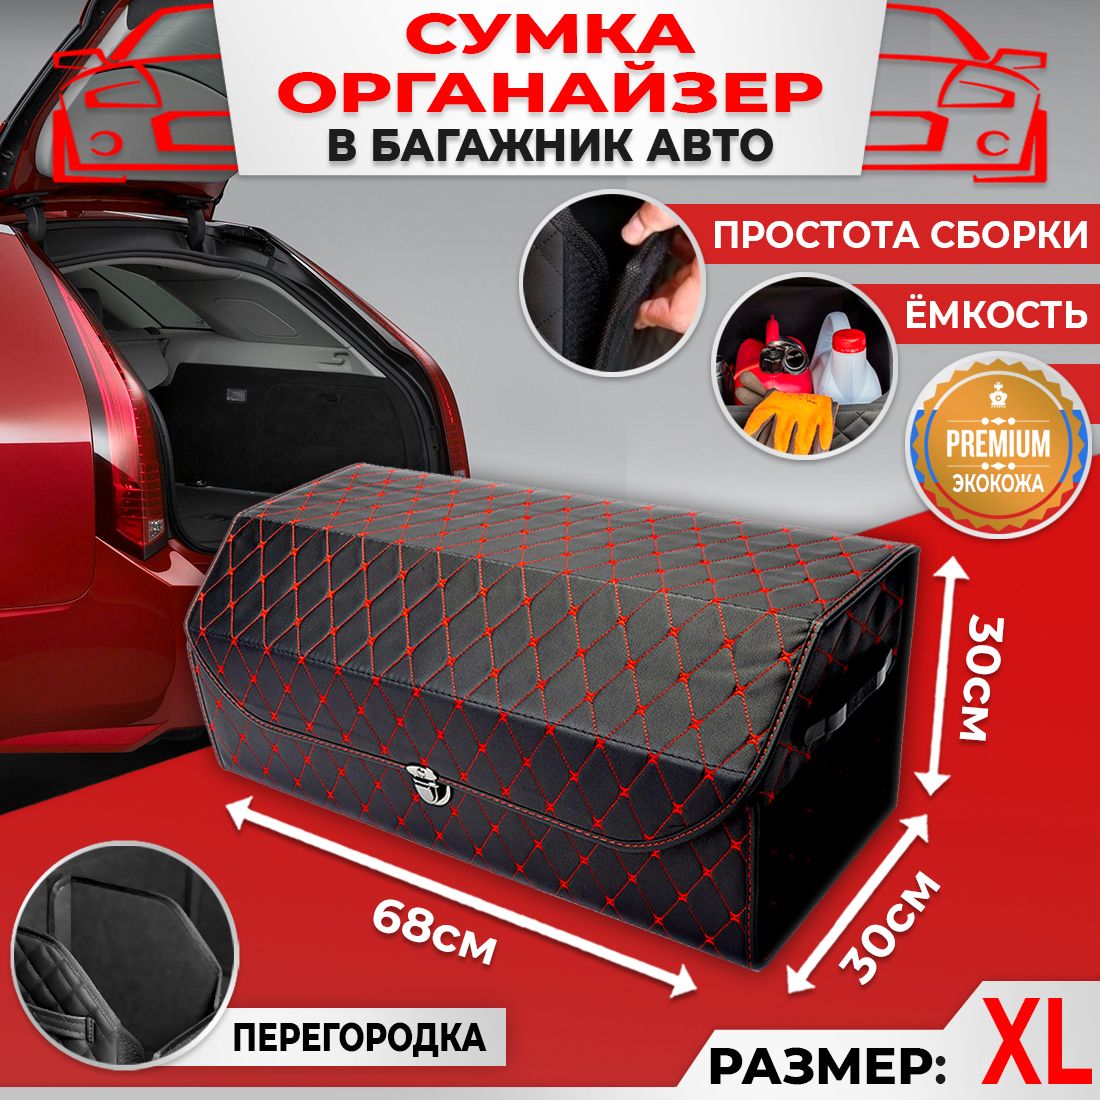 Сумка Саквояж Органайзер в багажник автомобиля размер 68х30х30см цвет черный ромб бабочка красный